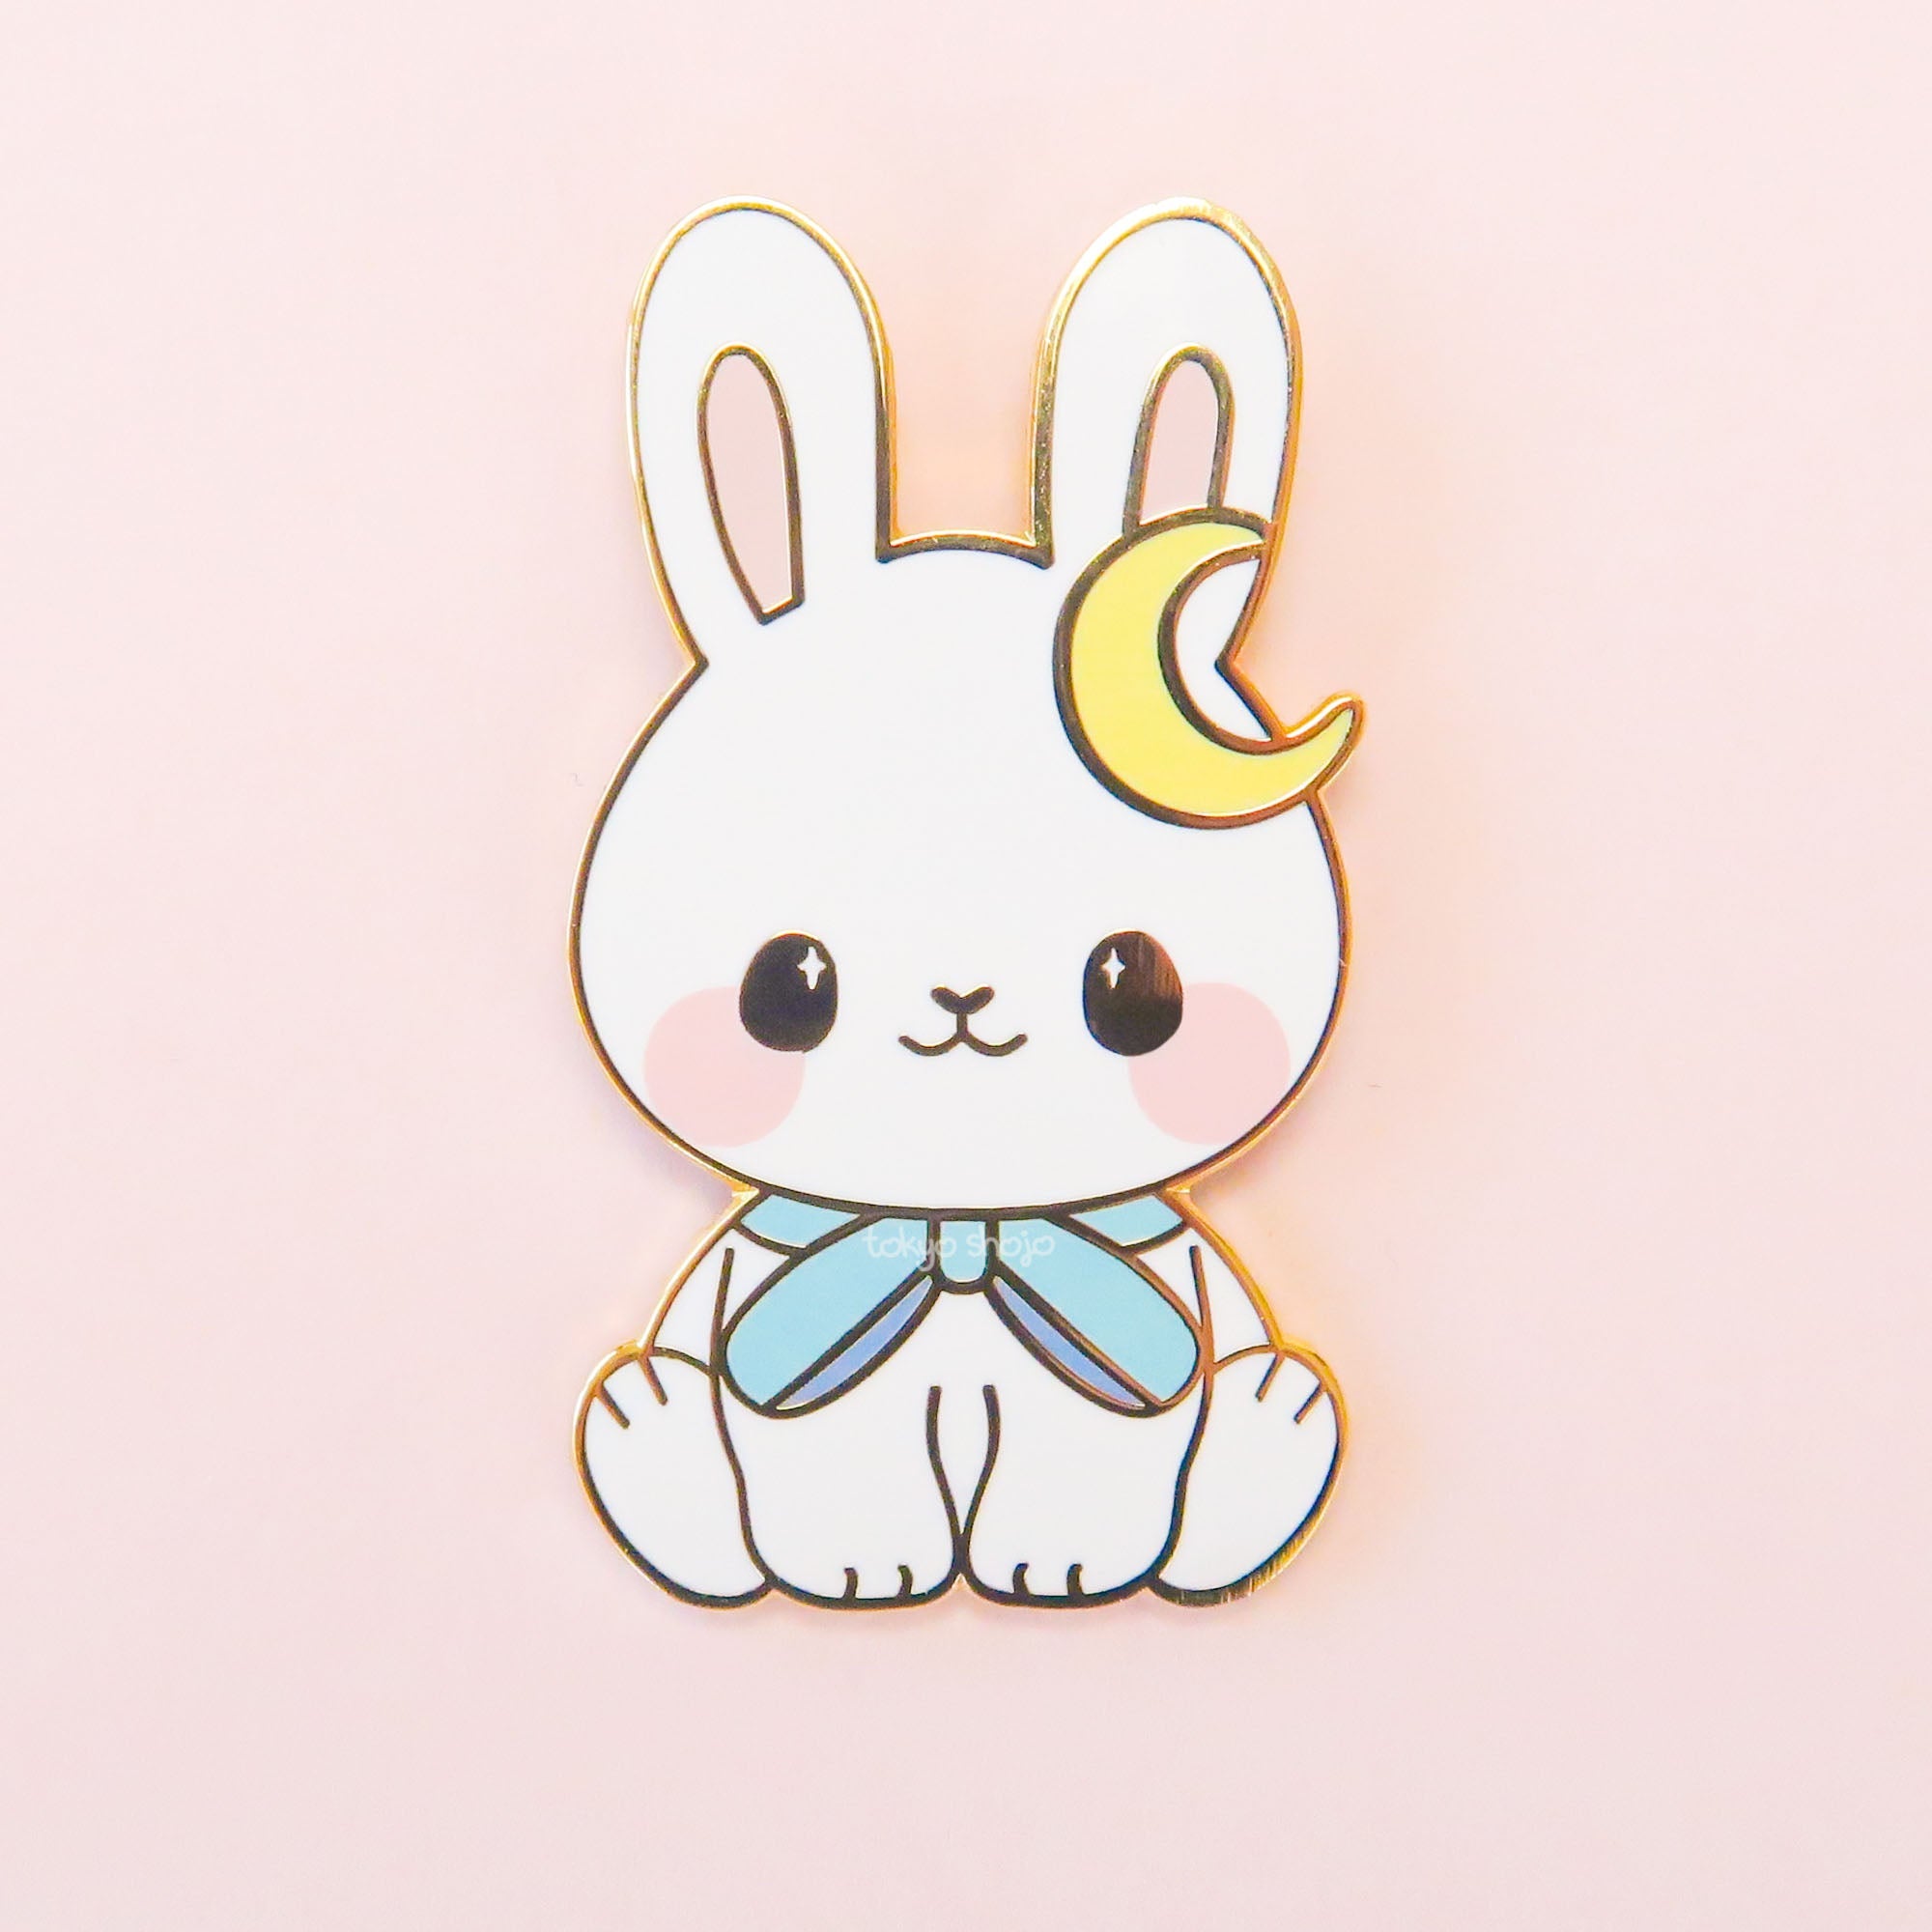 [Tokyo Shojo] Tsuki the Bunny Pin